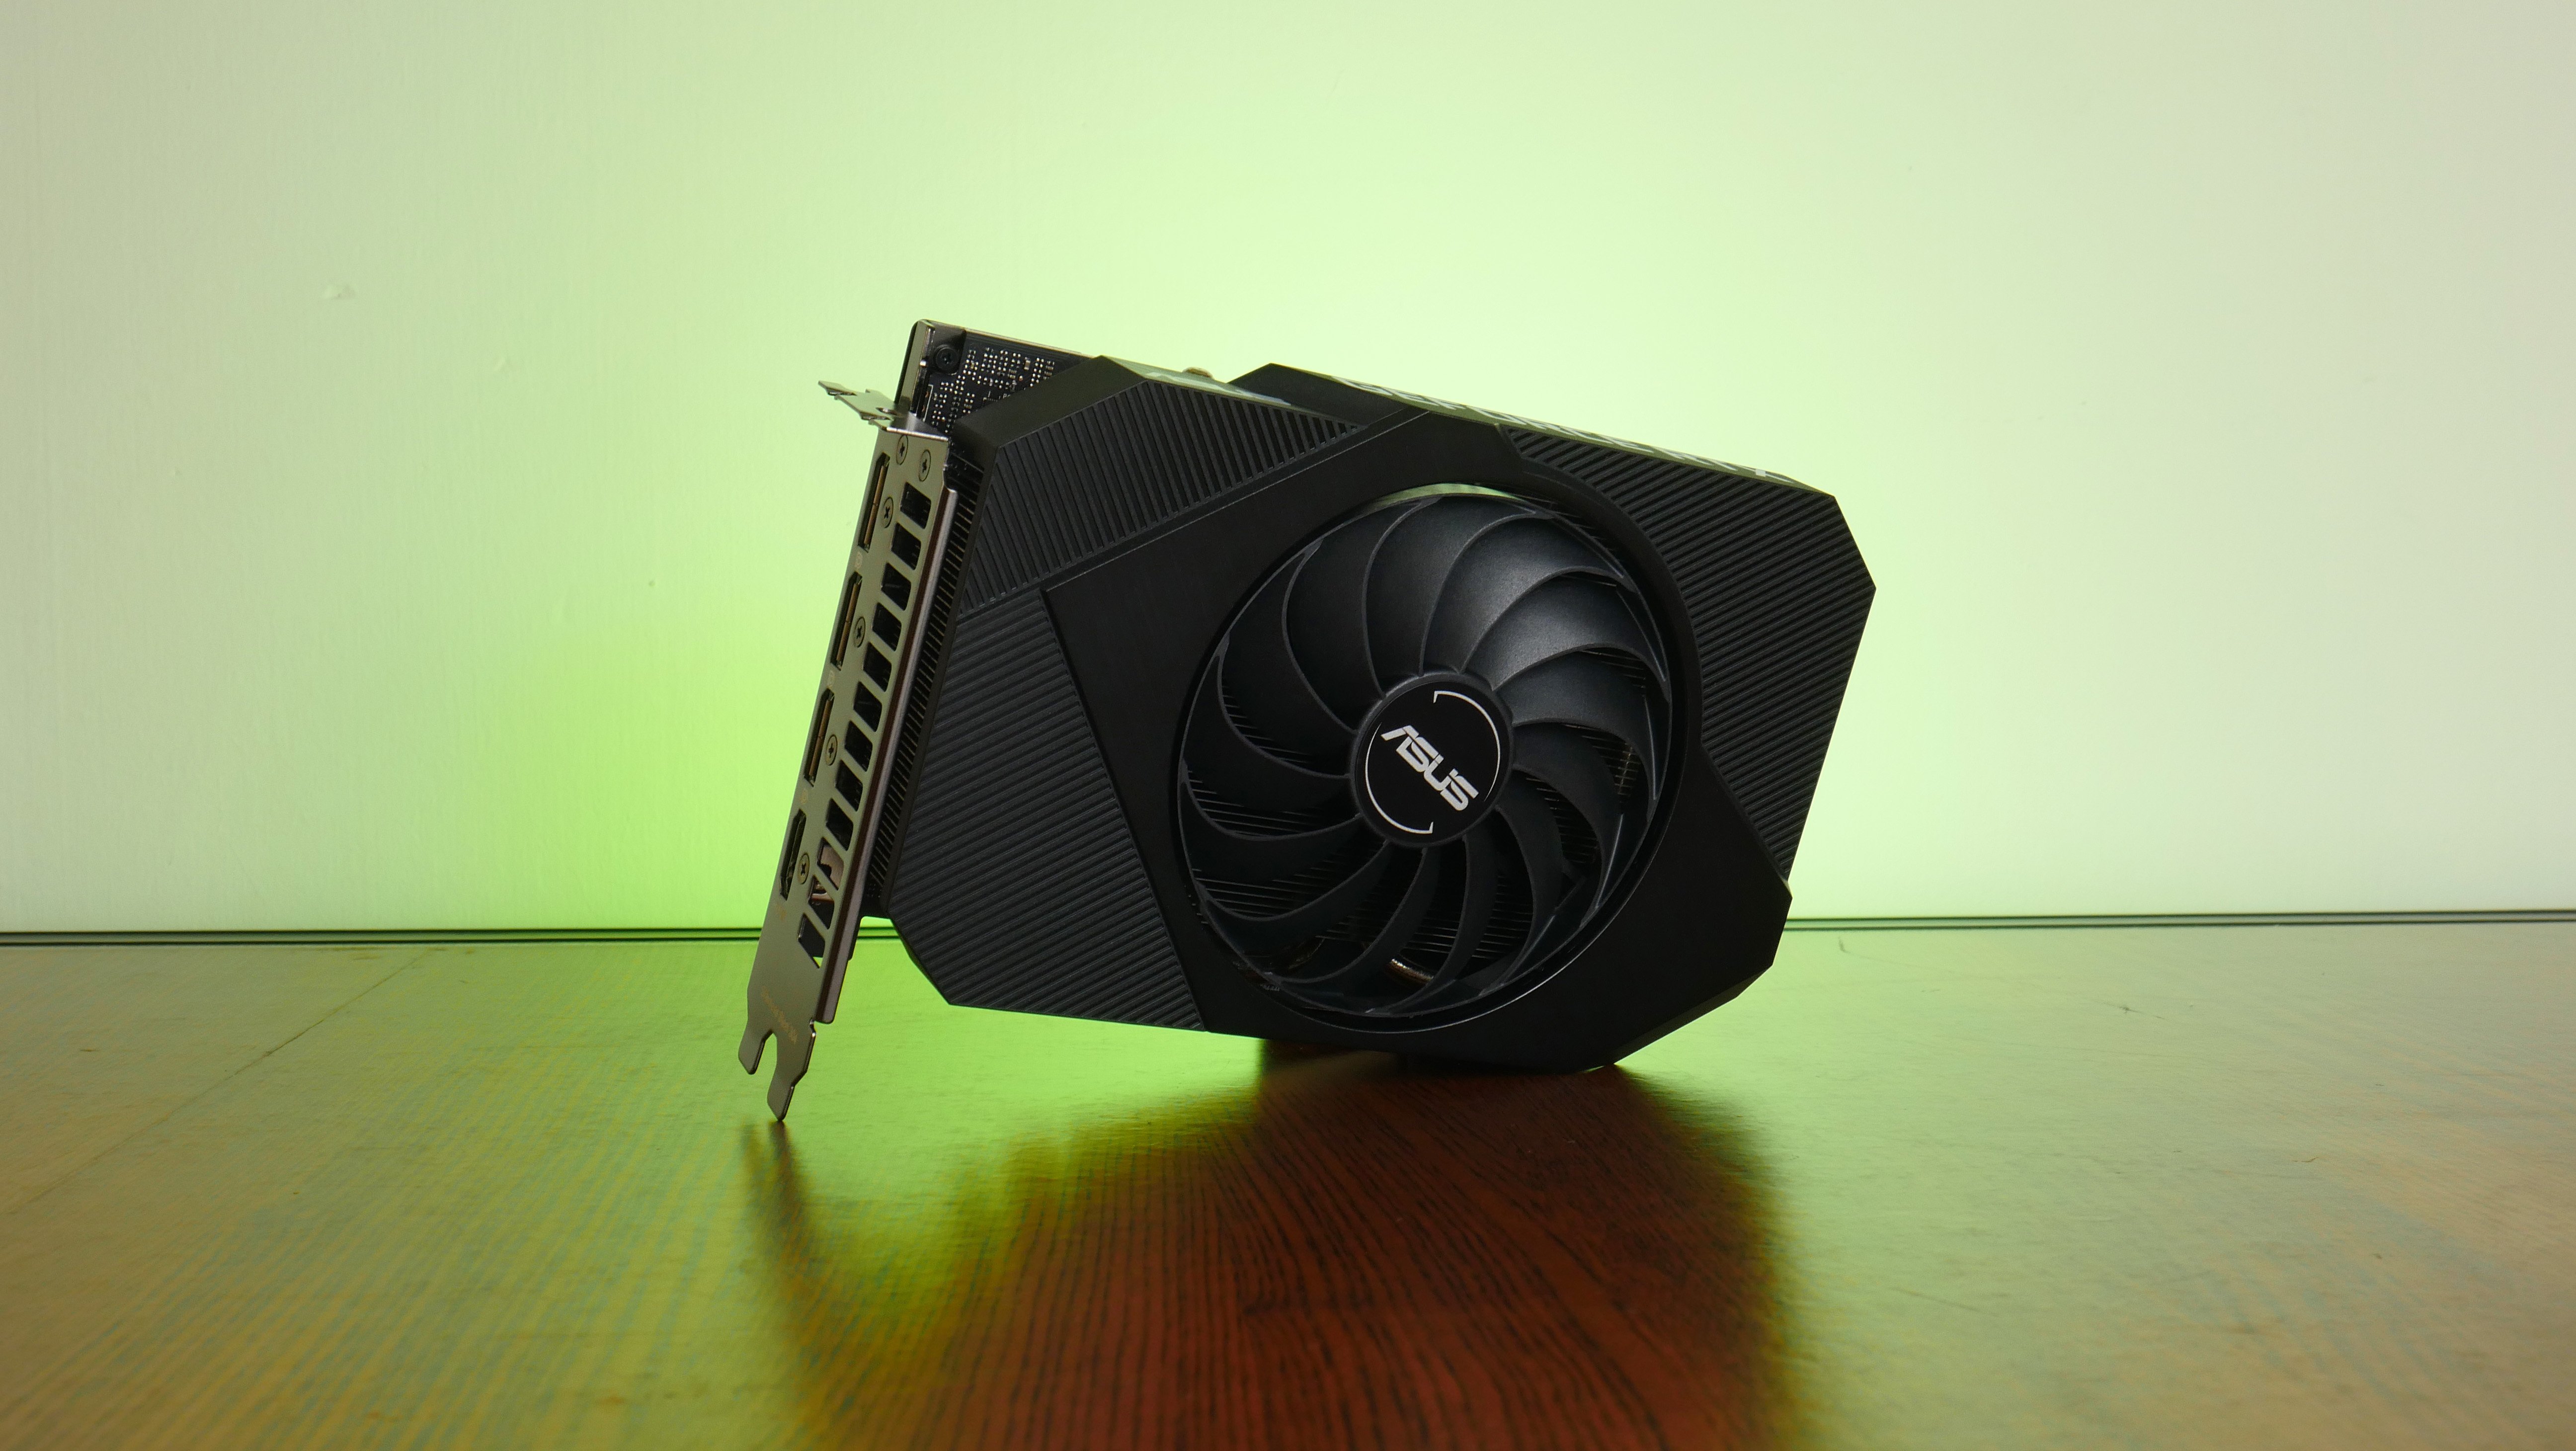 ASUS GeForce RTX 3060 Ti DUAL MINI OC V2 LHR - 8GB GDDR6 RAM - Grafikkort